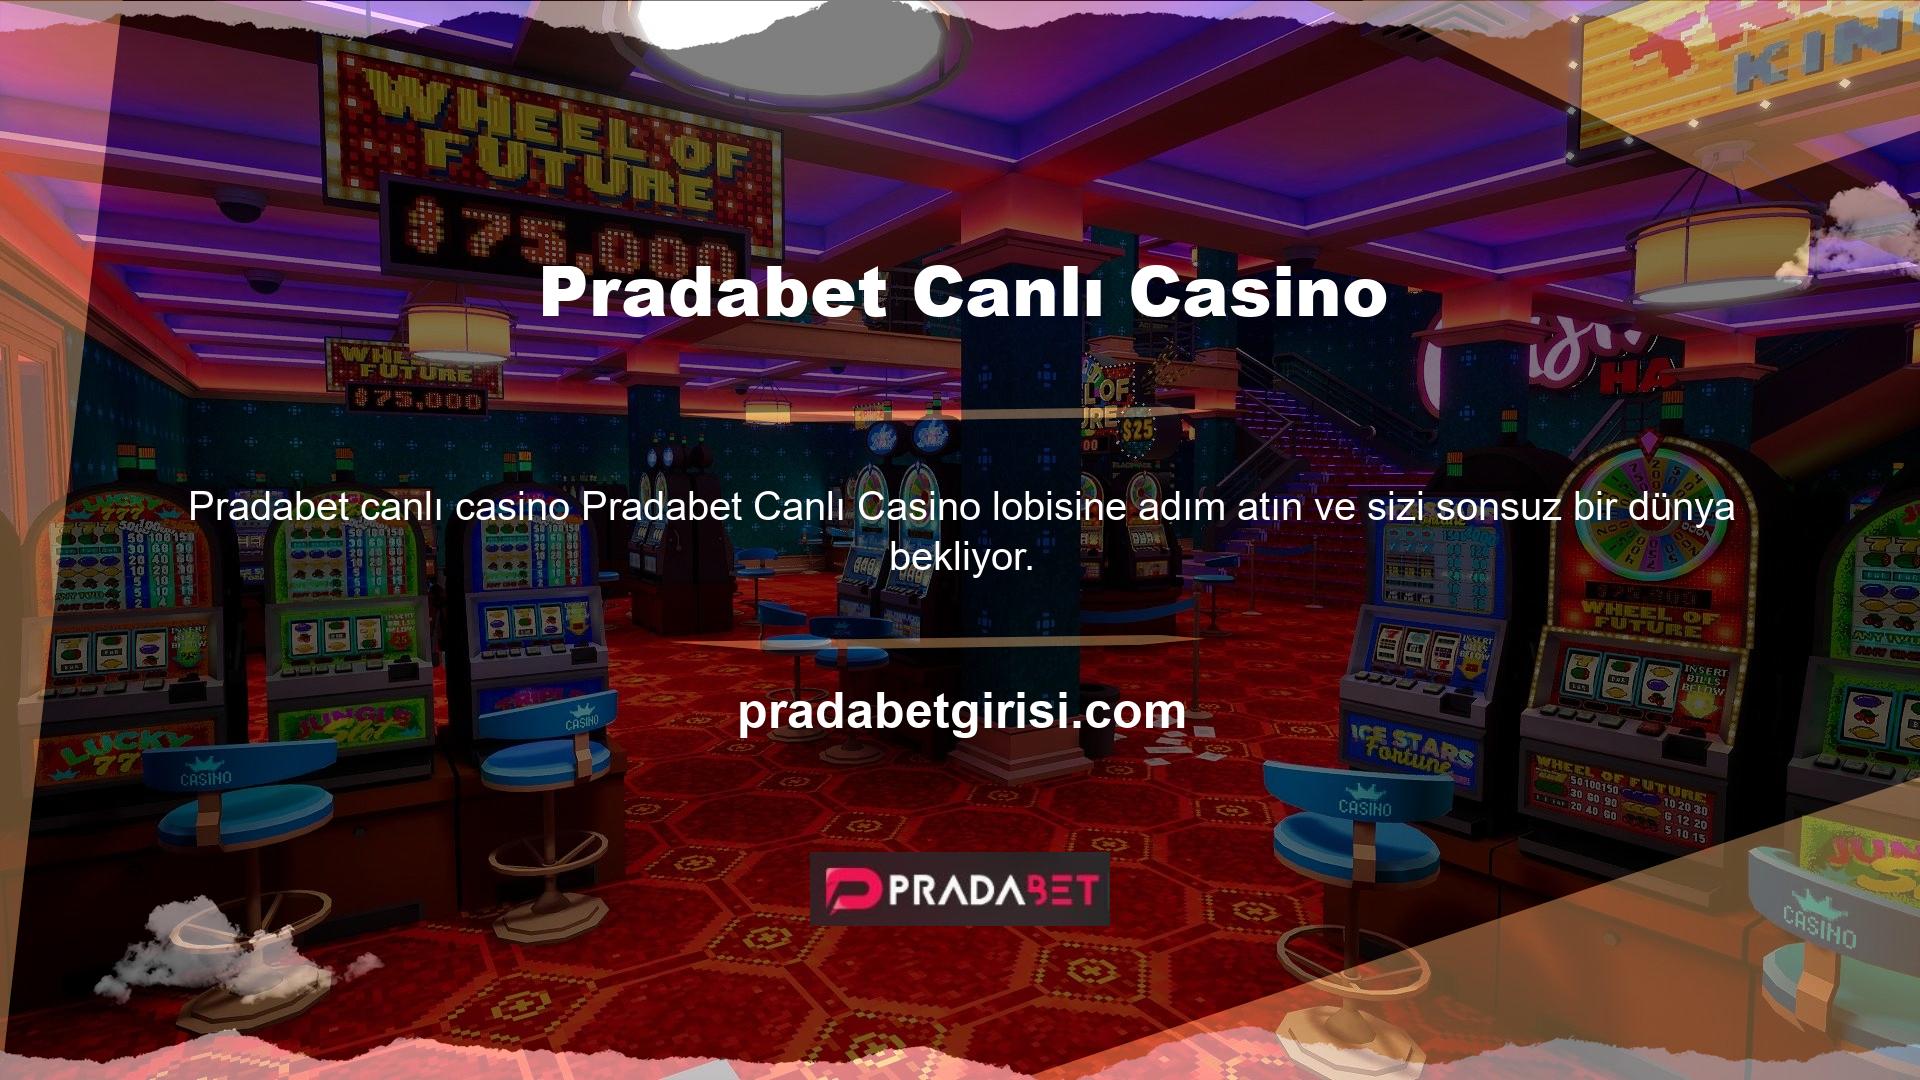 Casino alternatifi olarak Pradabet ülkemizdeki en büyük eksikliklerden biri olup oyuncuların ihtiyaçlarını karşılamaktadır